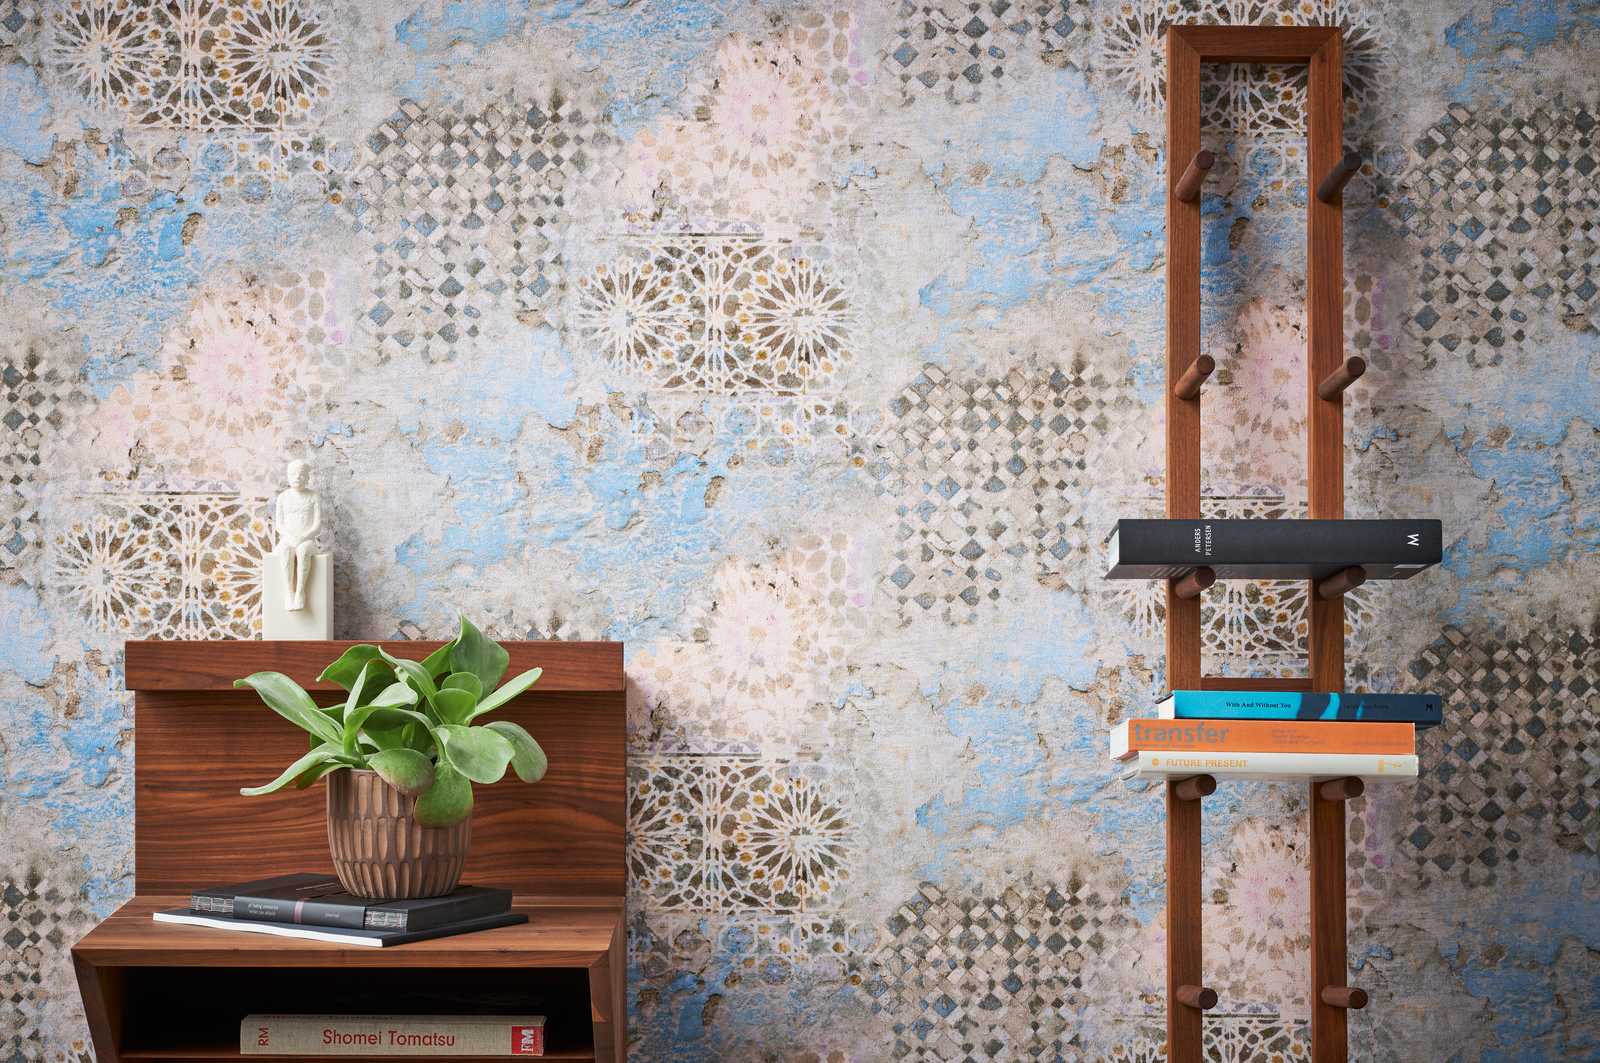             Kleurrijk mozaïekbehang met rustieke muurlook - beige, blauw, bruin
        